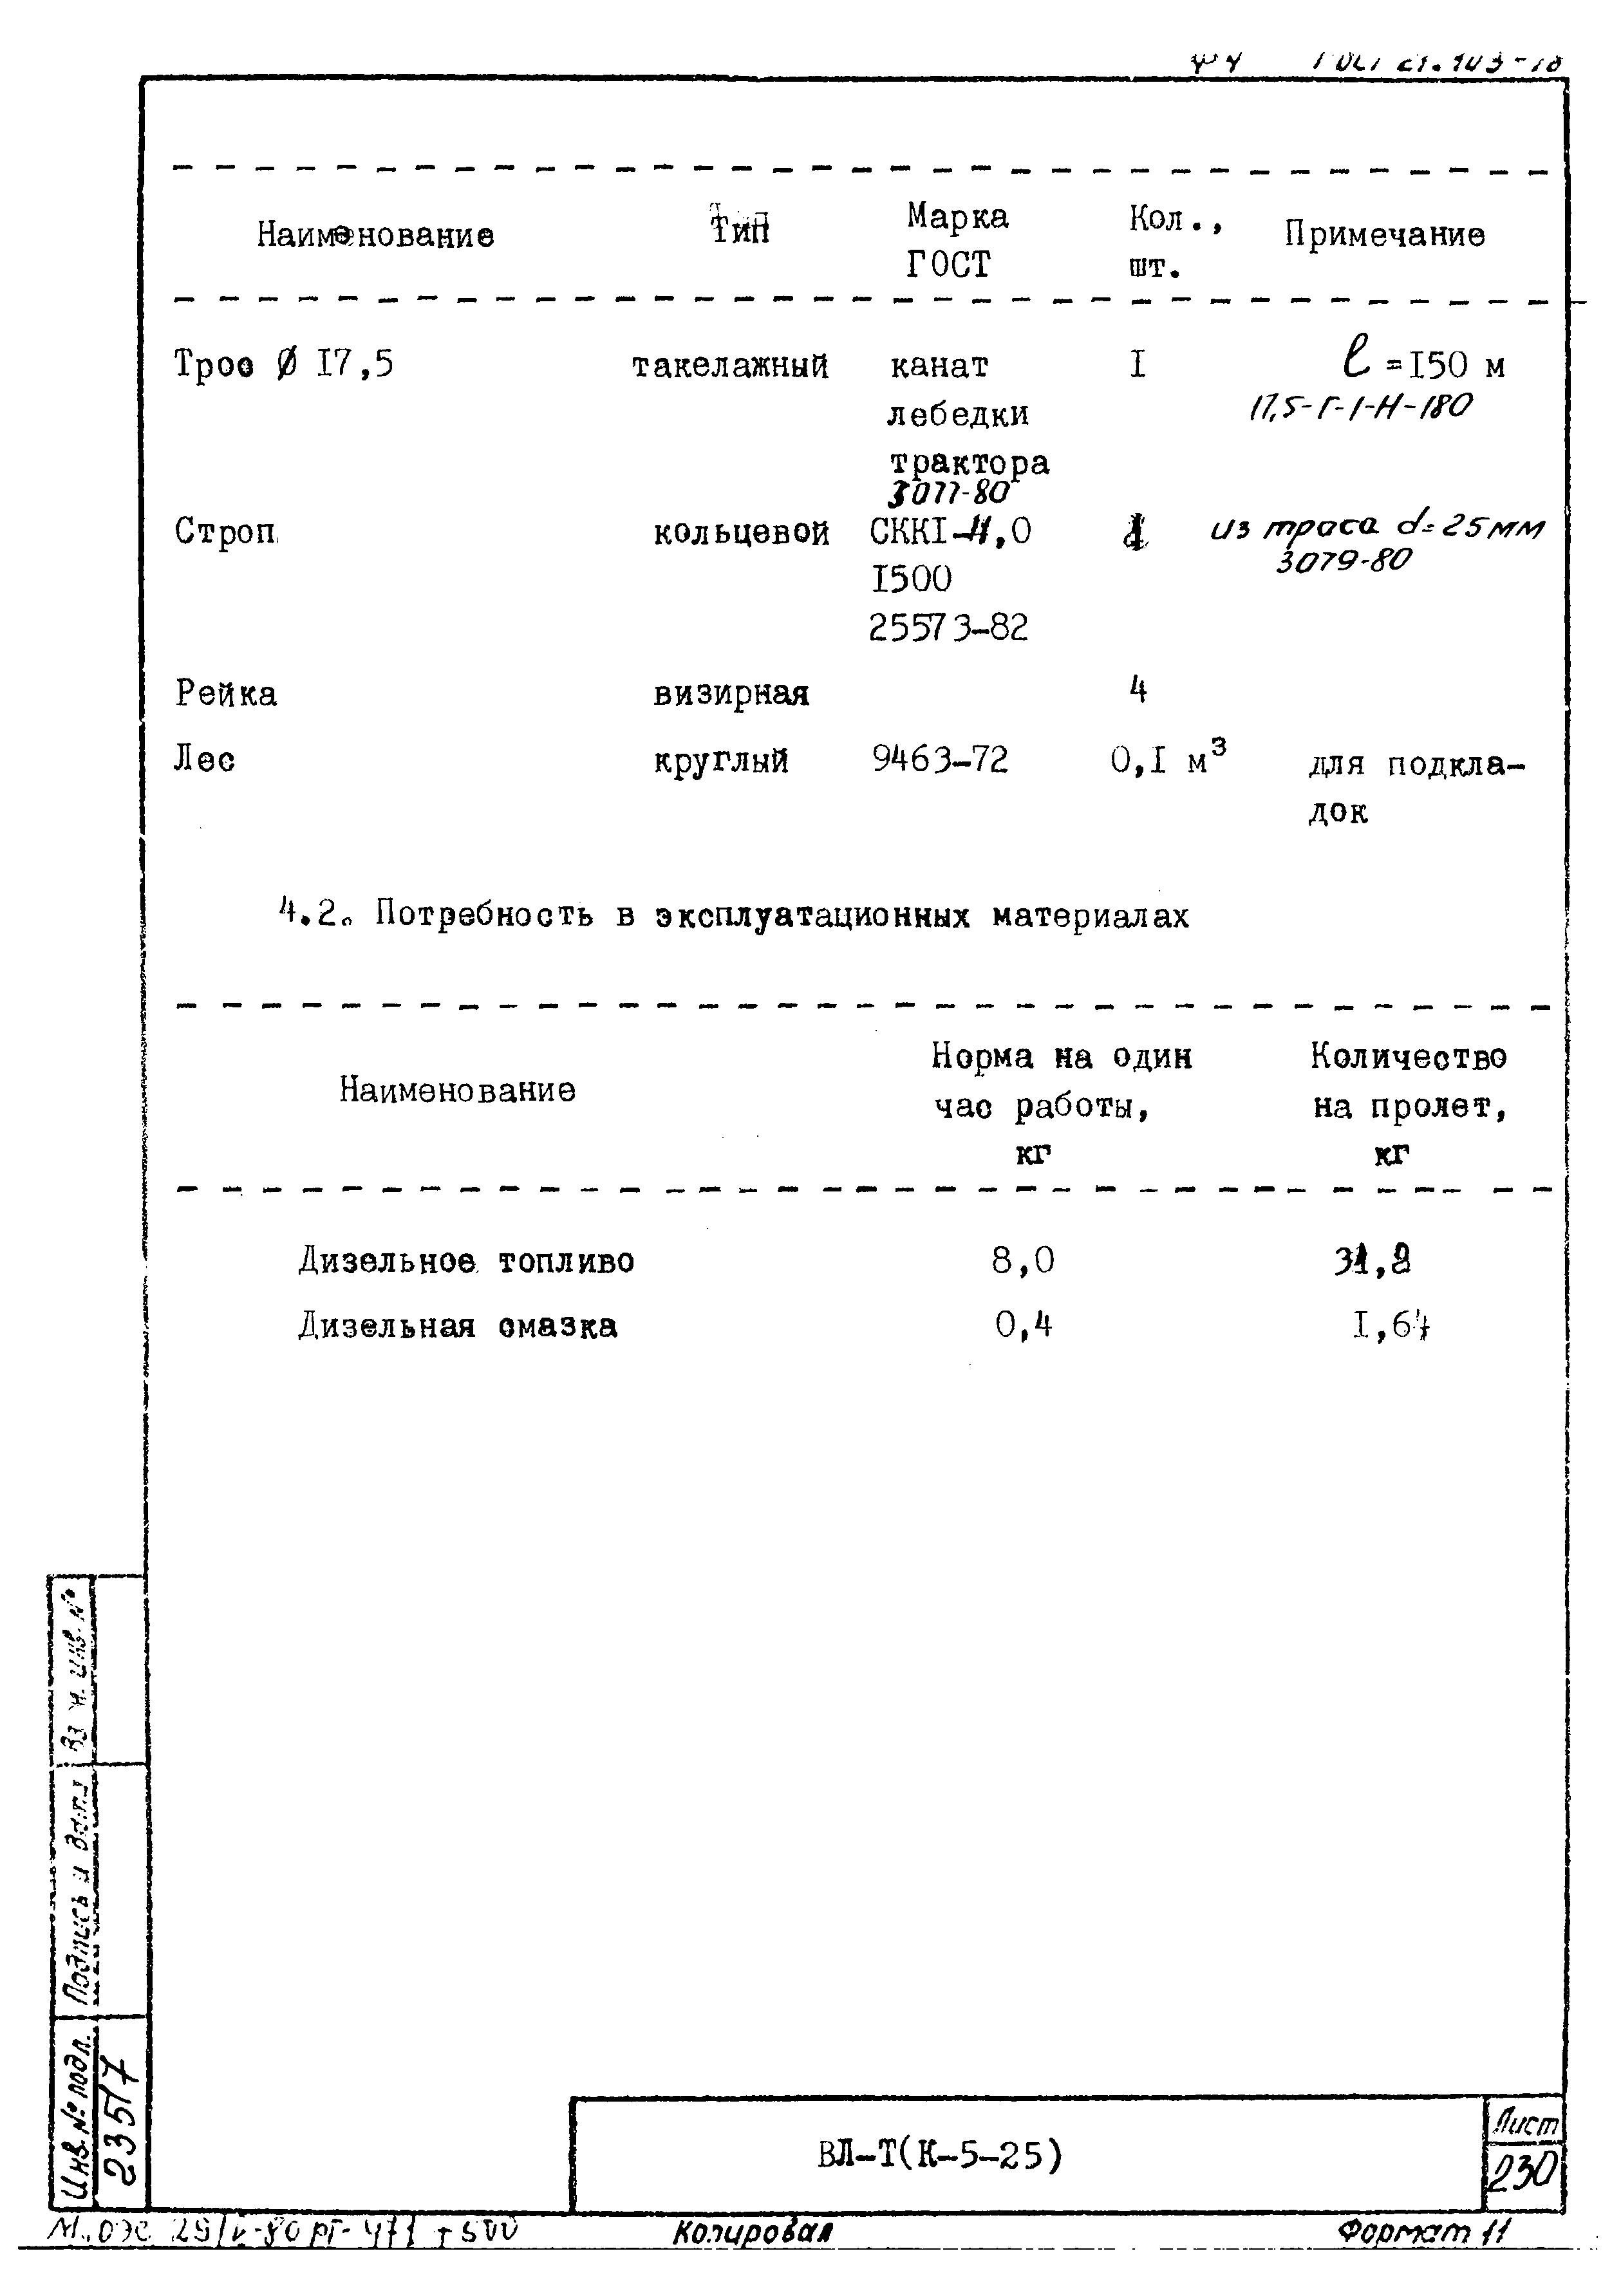 Технологическая карта К-5-25-20